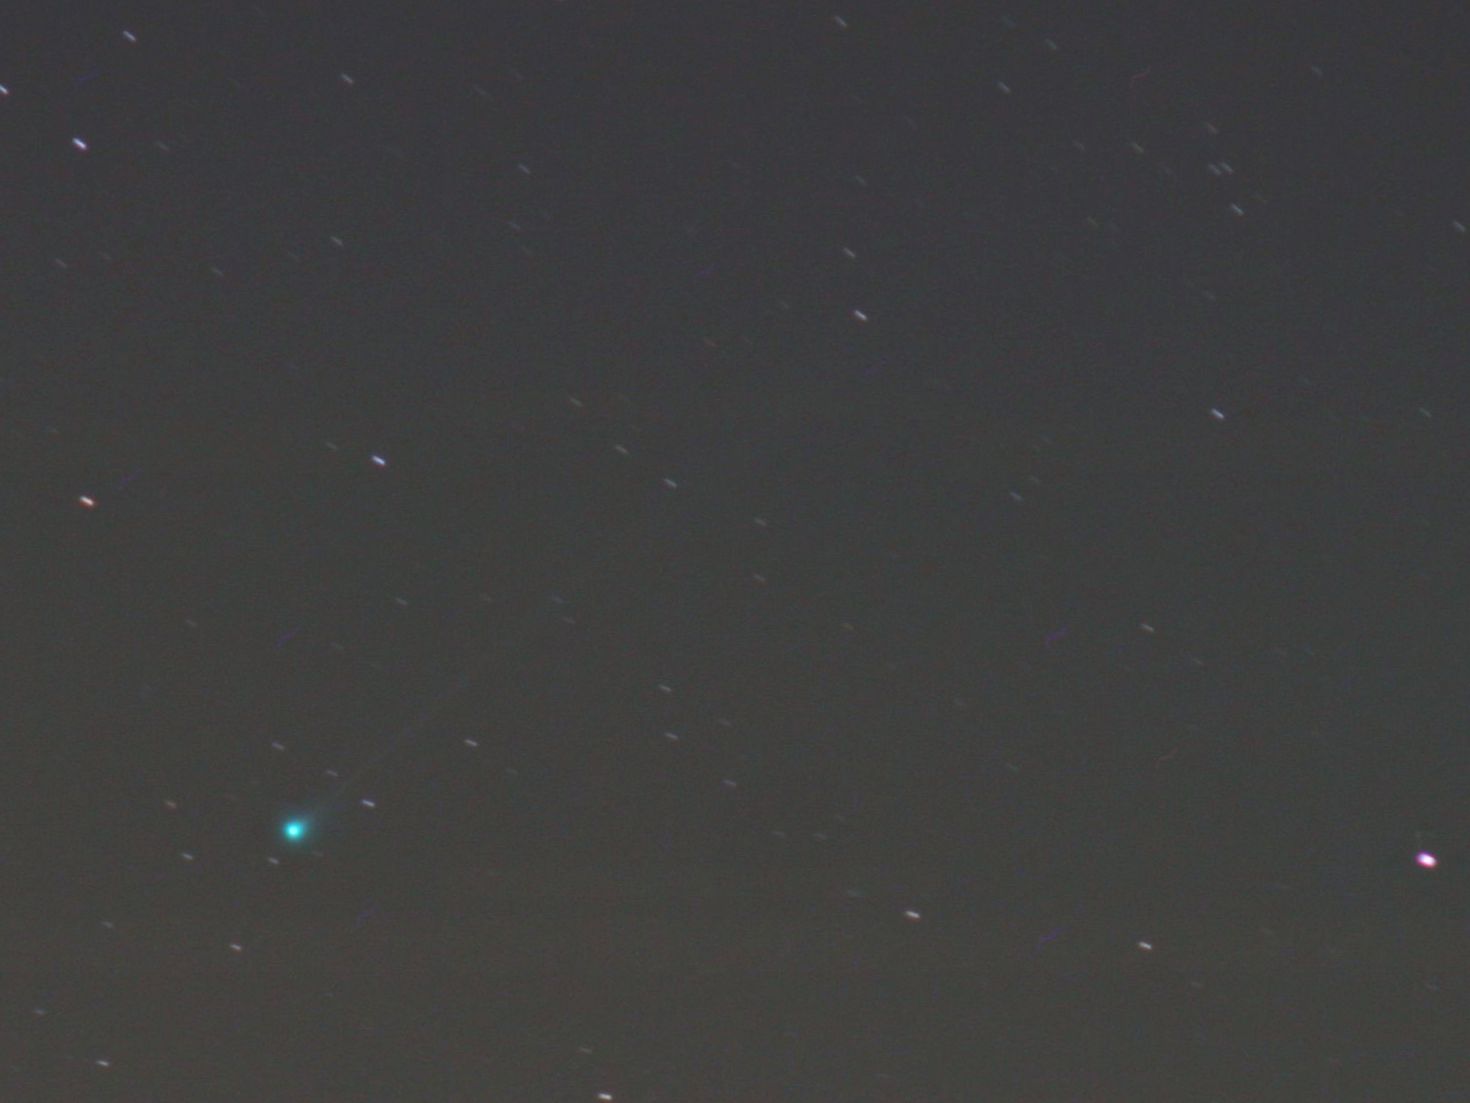 Komet LONEOS am 14.10.07